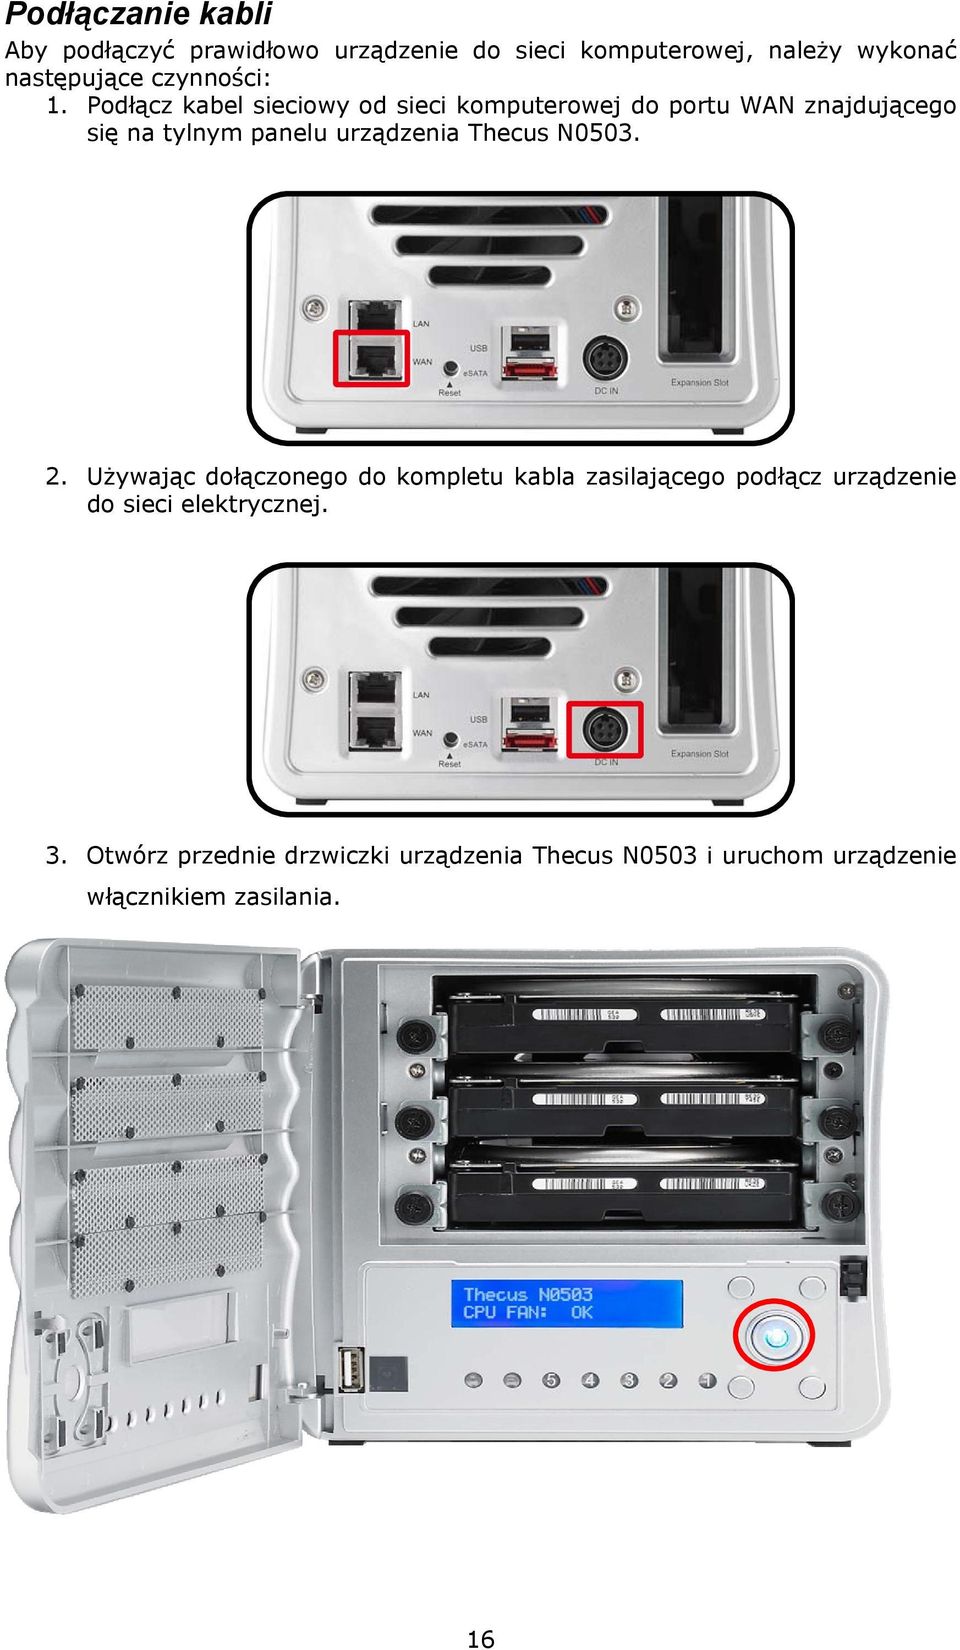 Podłącz kabel sieciowy od sieci komputerowej do portu WAN znajdującego się na tylnym panelu urządzenia